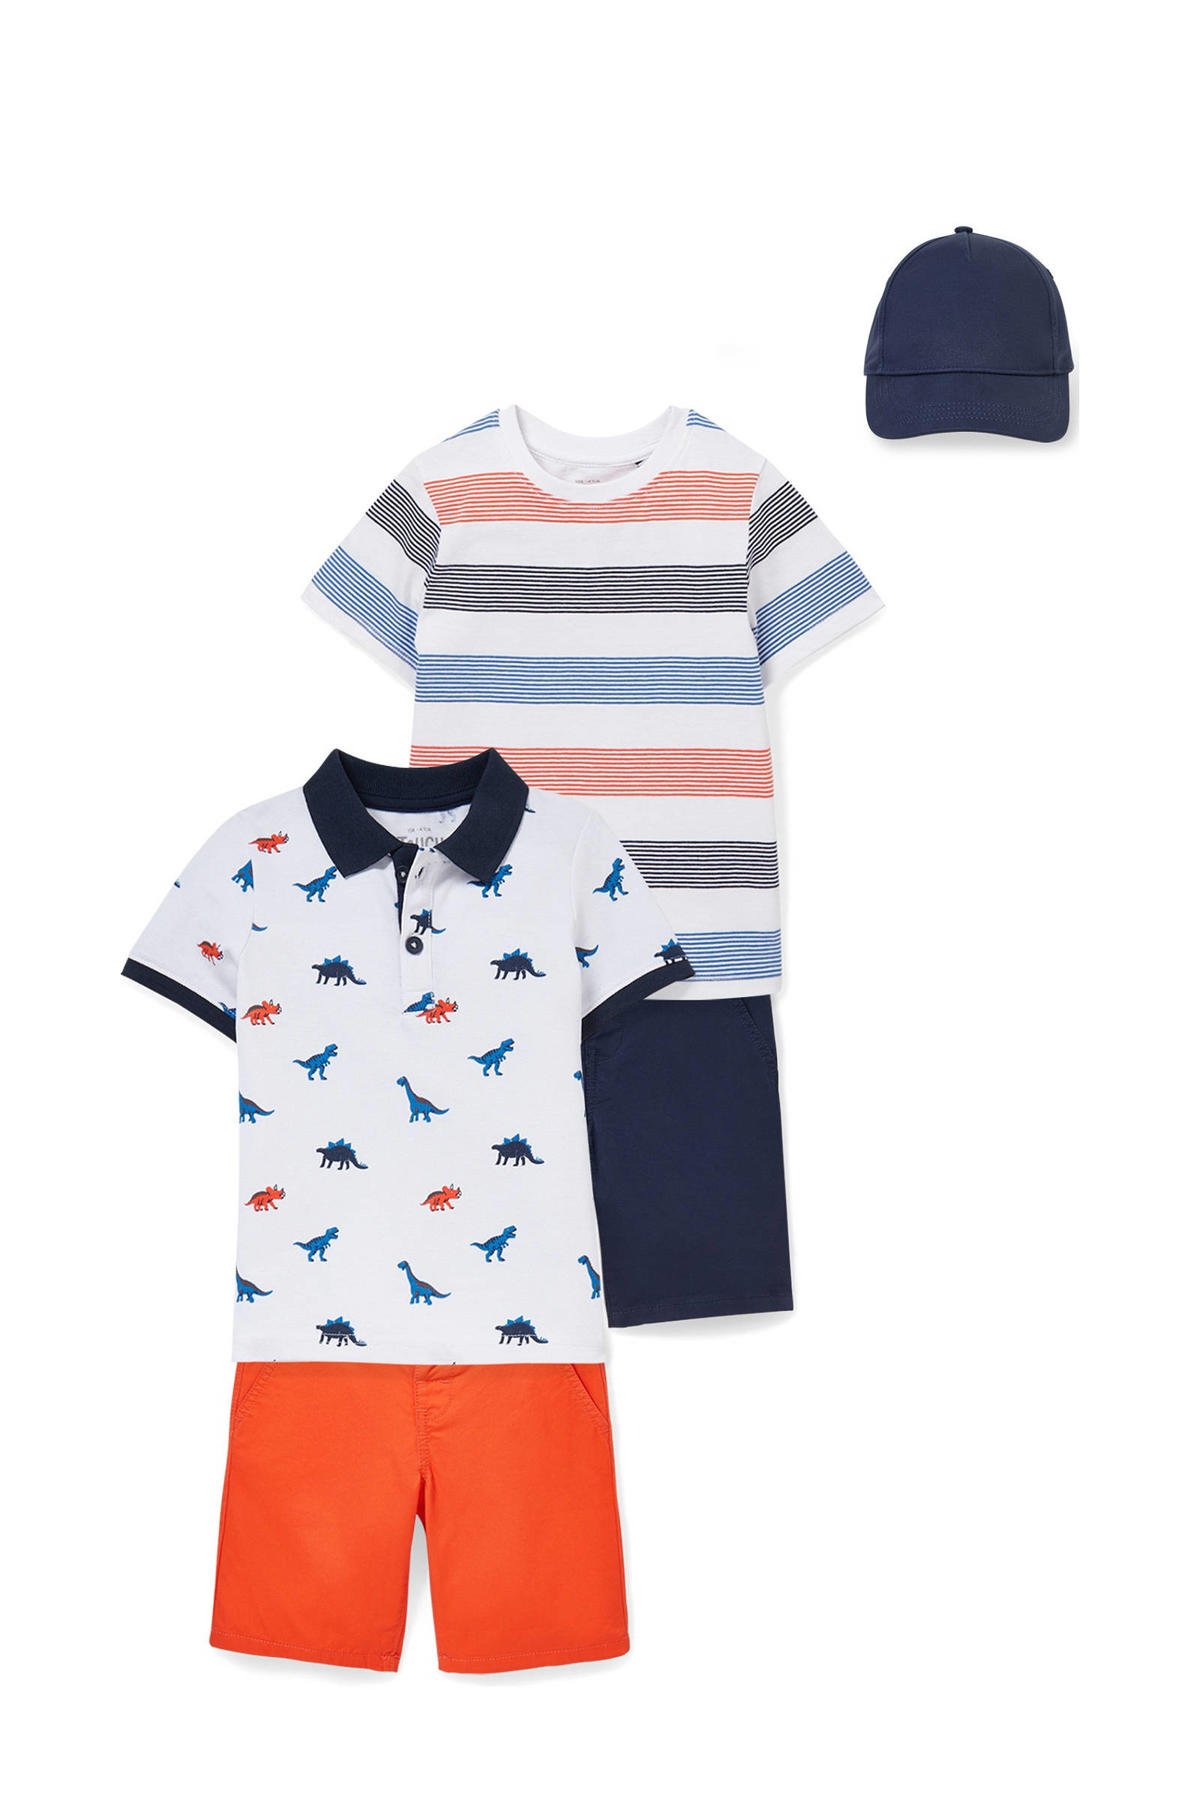 vertraging Strippen mouw C&A polo + T-shirt + korte broek + pet oranje/wit/blauw | wehkamp